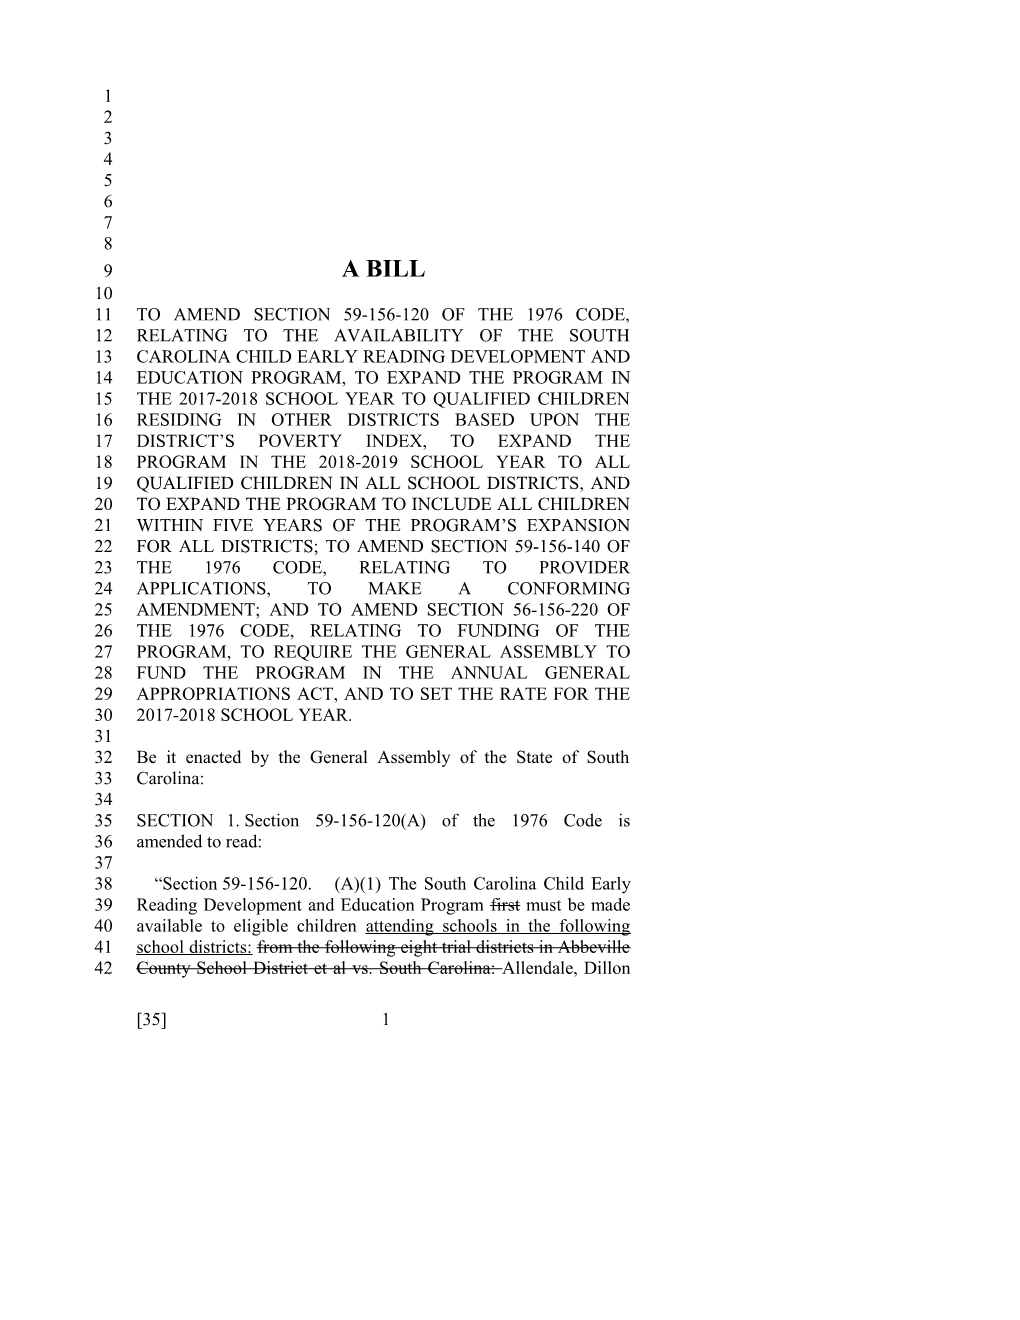 2017-2018 Bill 35 Text of Previous Version (Dec. 13, 2016) - South Carolina Legislature Online